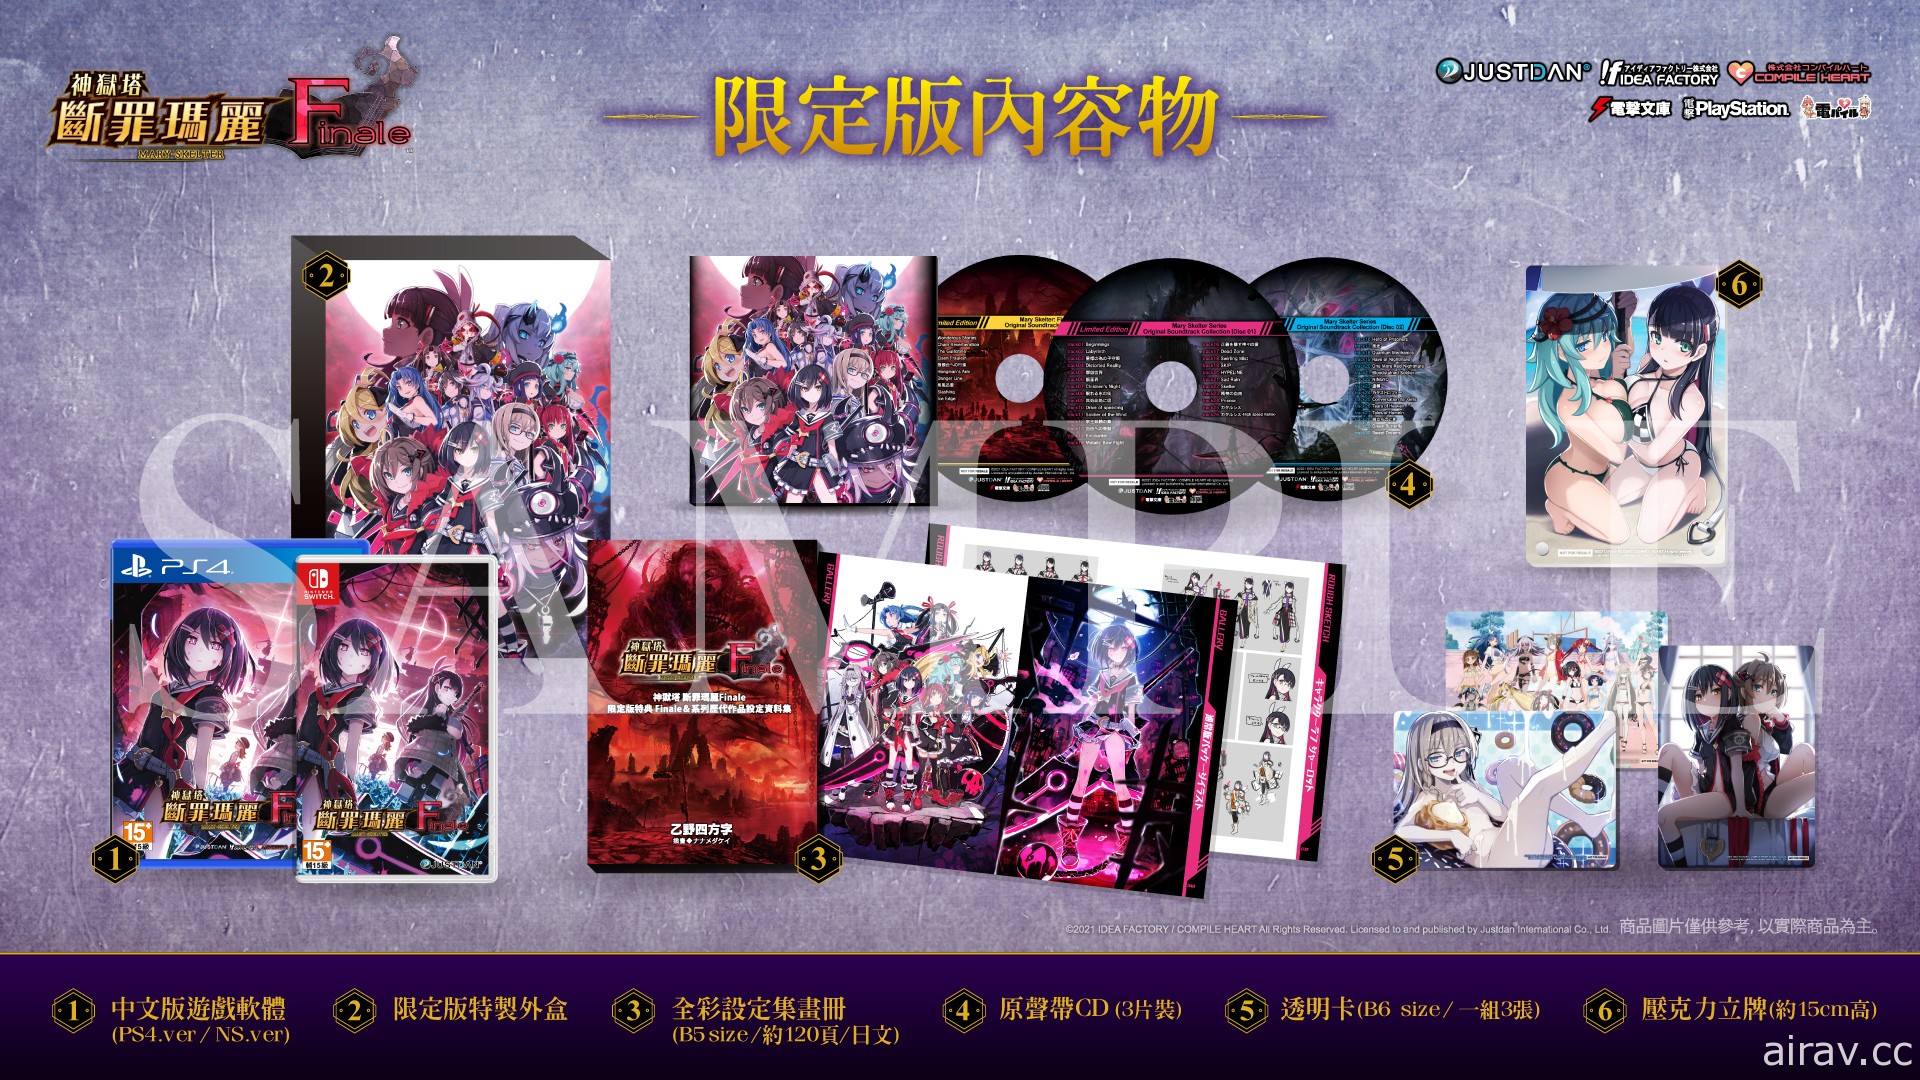 《神狱塔 断罪玛丽 Finale》中文版 7 月 22 日发售 预约特典及限定版资讯揭晓